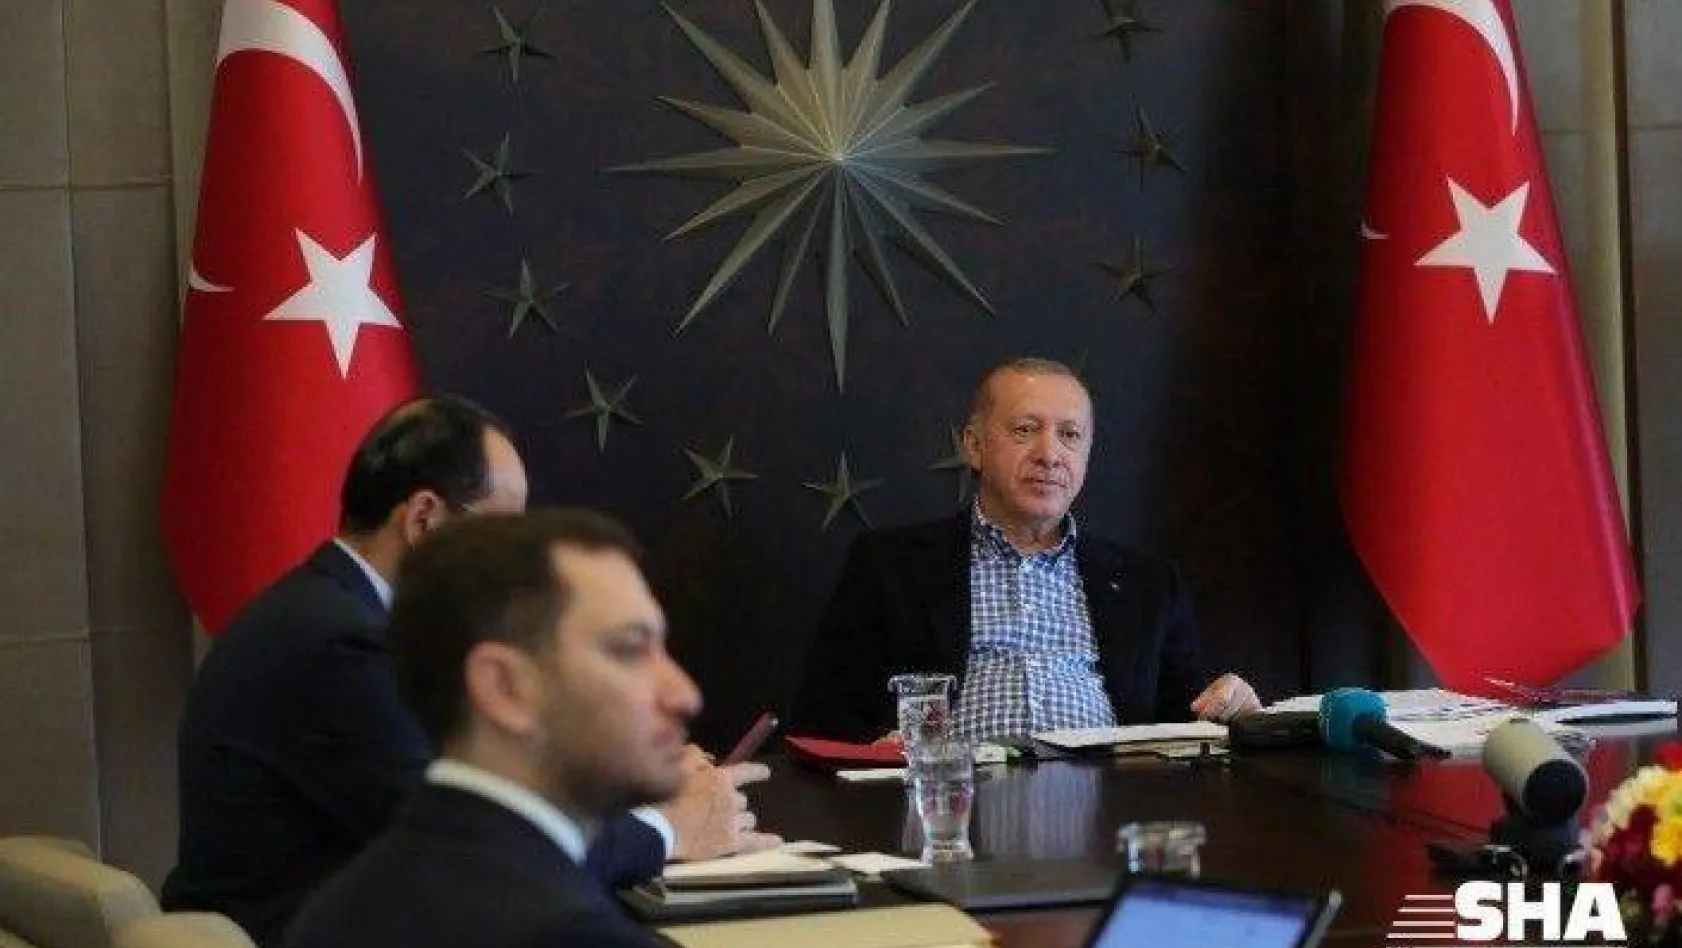 Cumhurbaşkanı Erdoğan, Nihat Özdemir ve A Milliler ile video konferansla görüştü